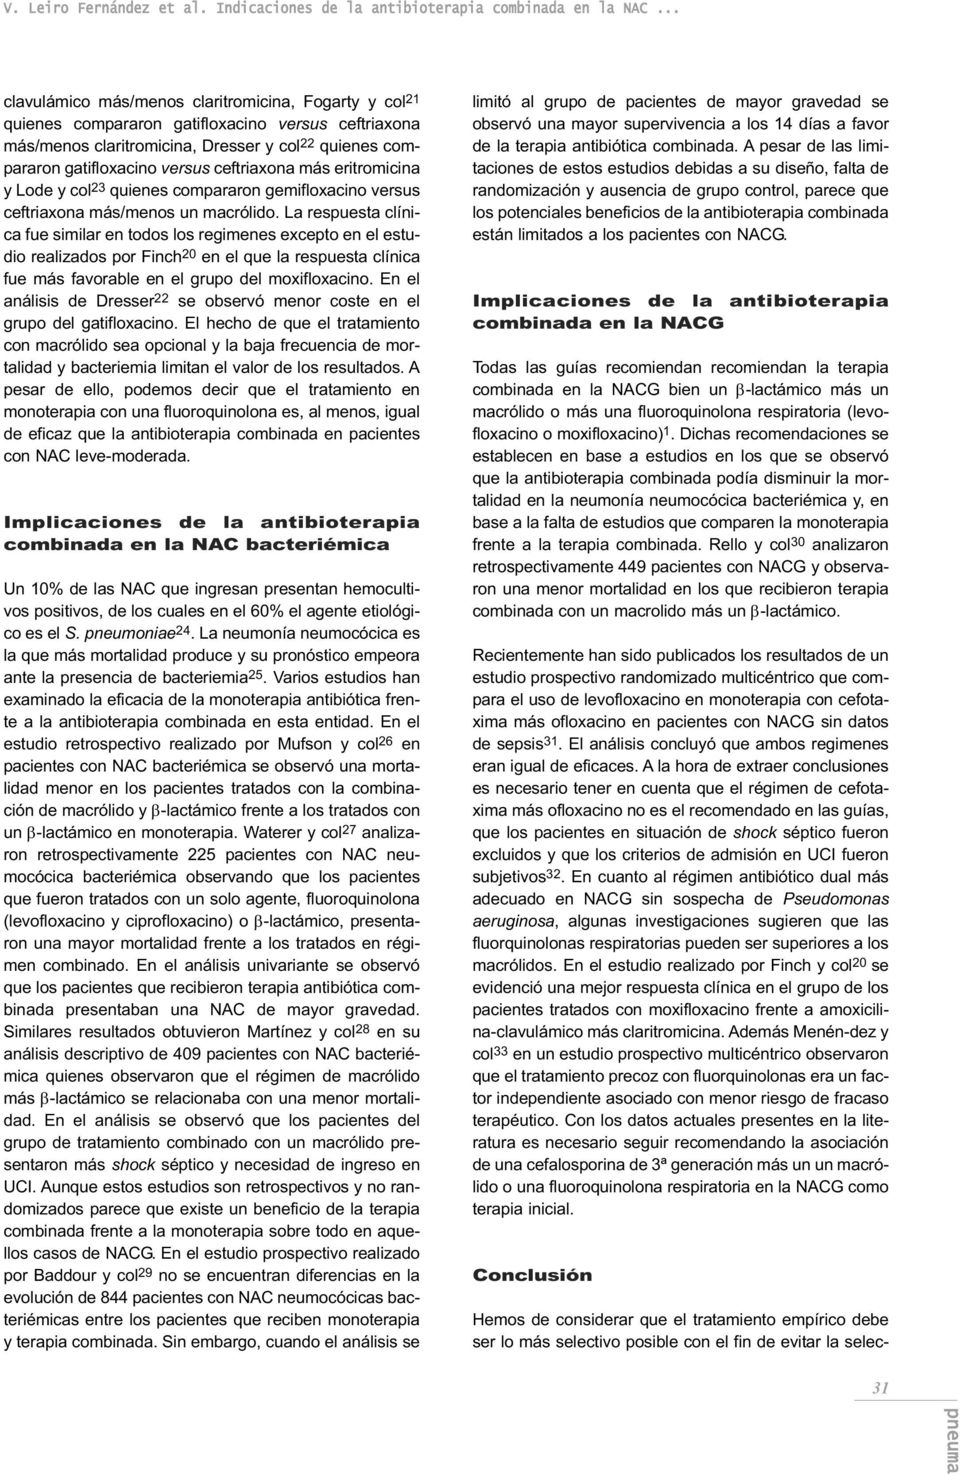 ceftriaxona más eritromicina y Lode y col 23 quienes compararon gemifloxacino versus ceftriaxona más/menos un macrólido.